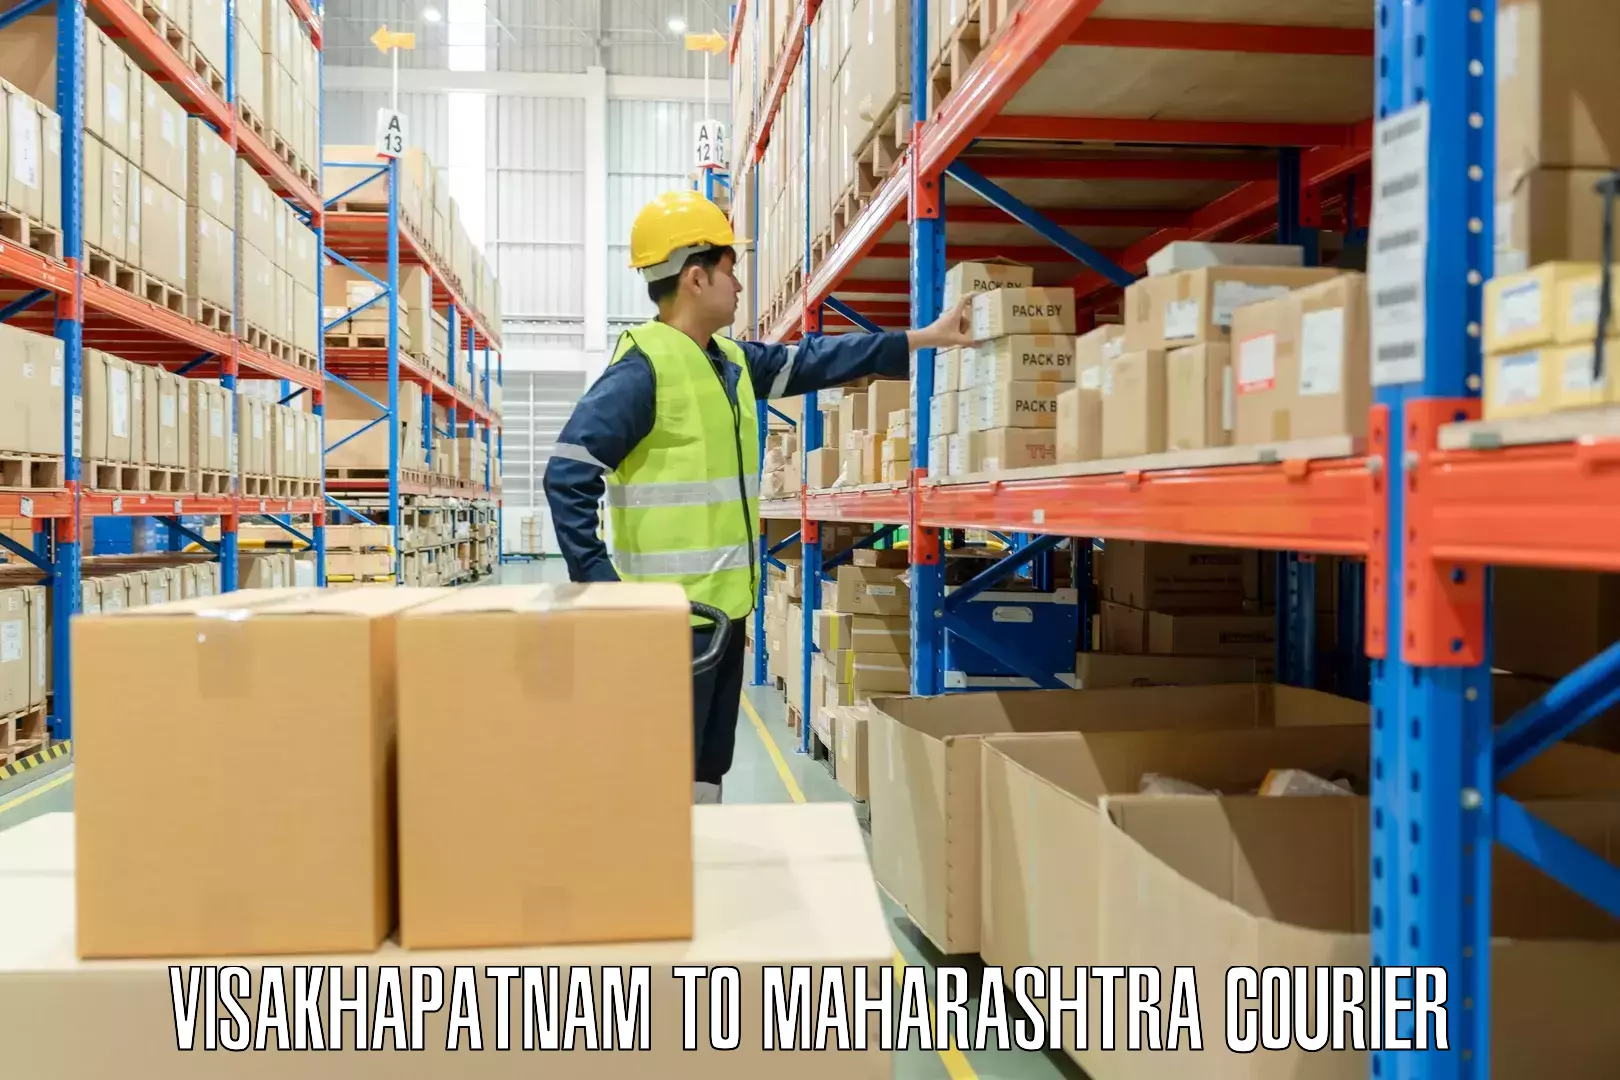 Baggage transport management Visakhapatnam to Maharashtra